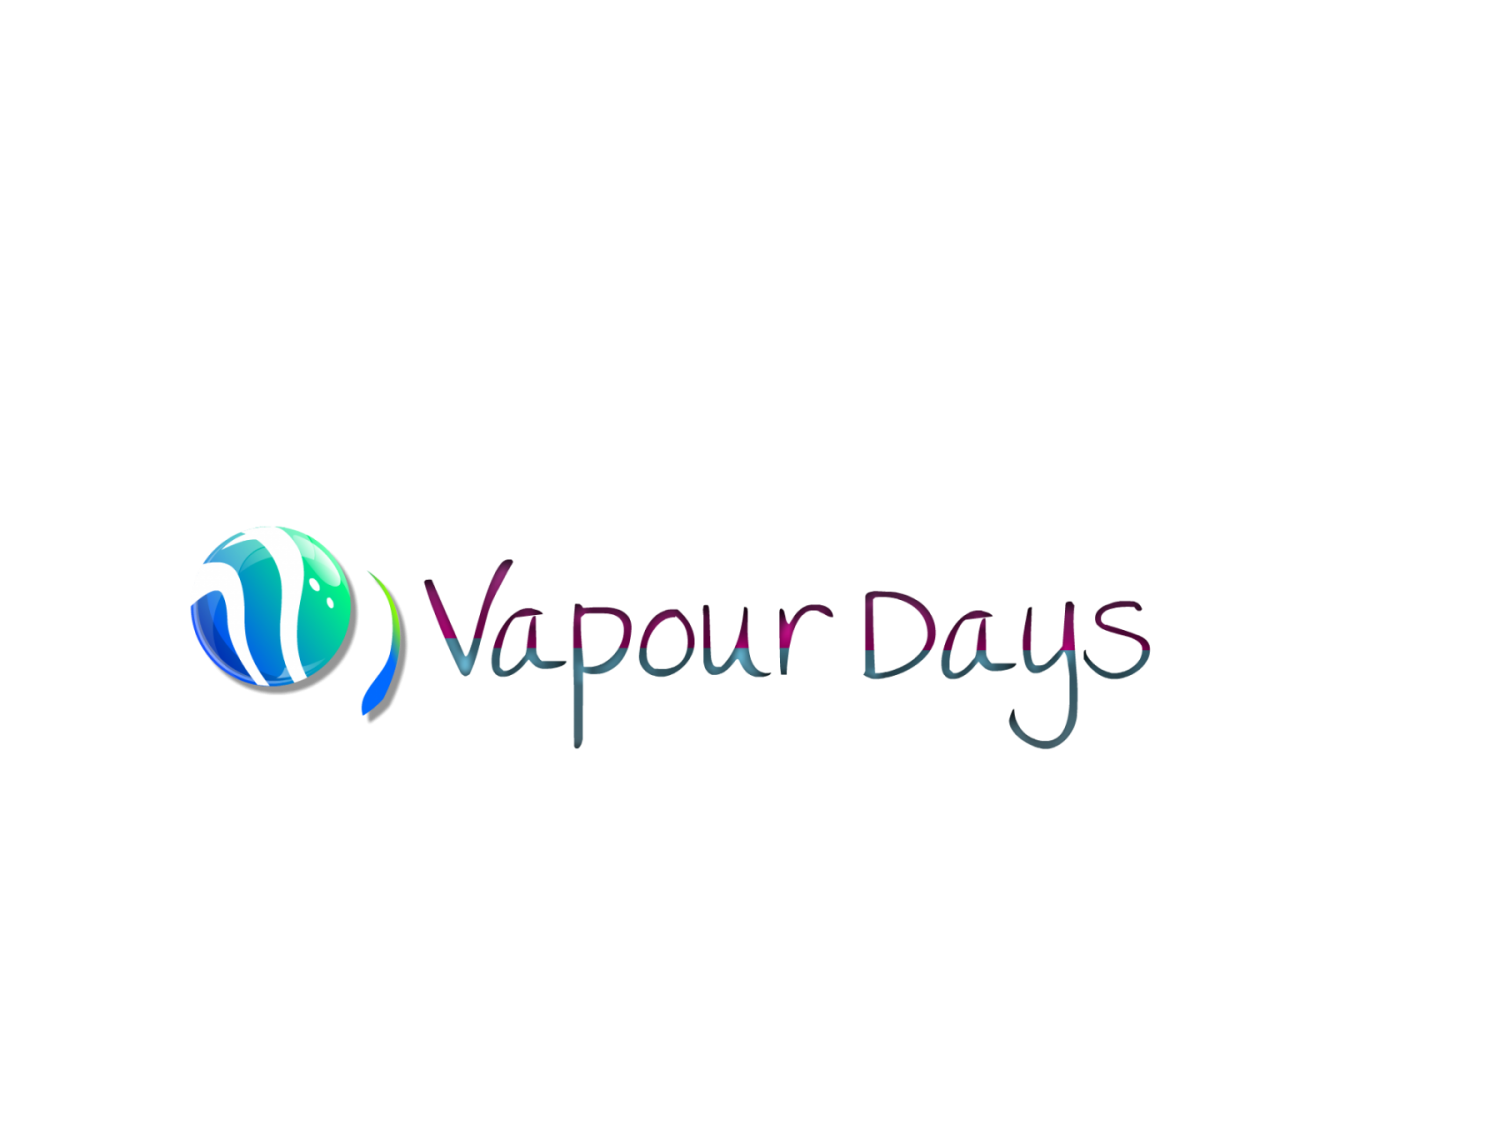 Bristol Vapour Days Electronic Cigarettes E-Liquid Shop